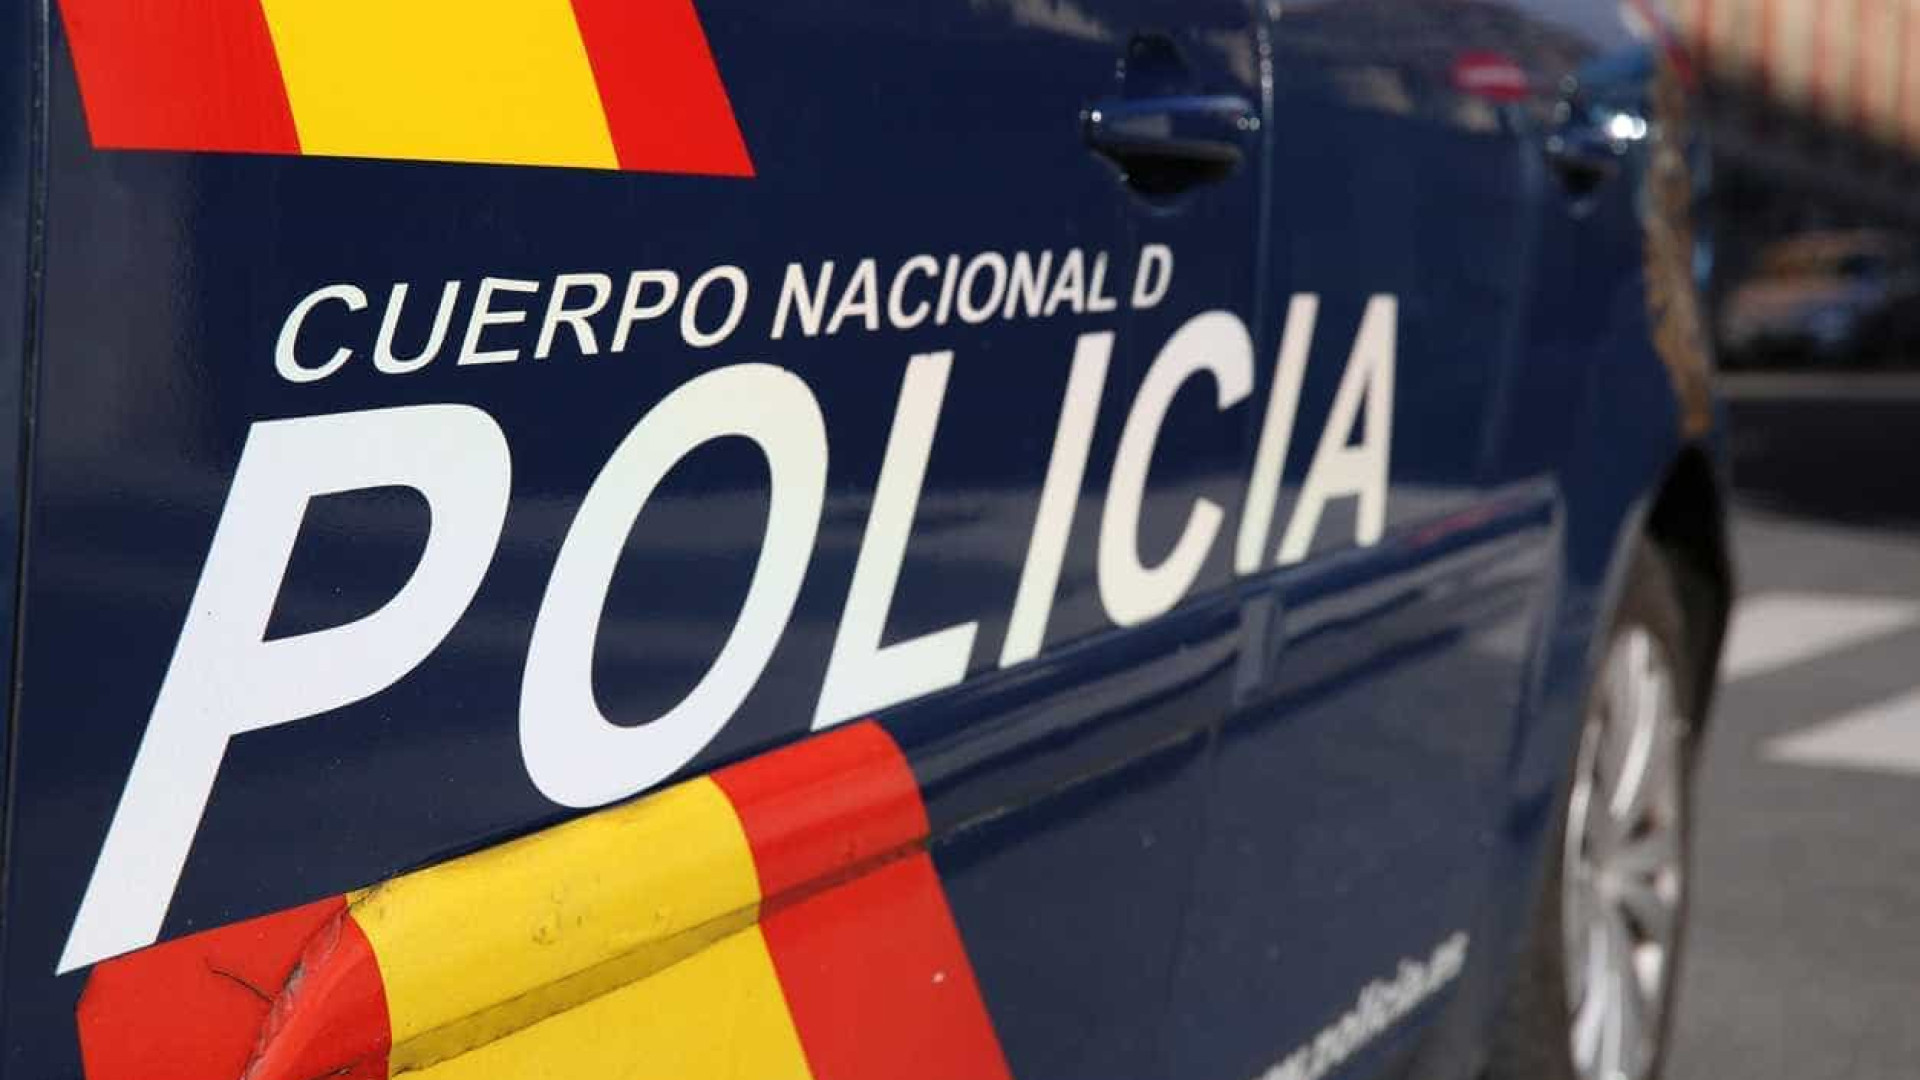 Casal encontrado morto na zona de Cádiz. Corpos têm ferimentos de bala